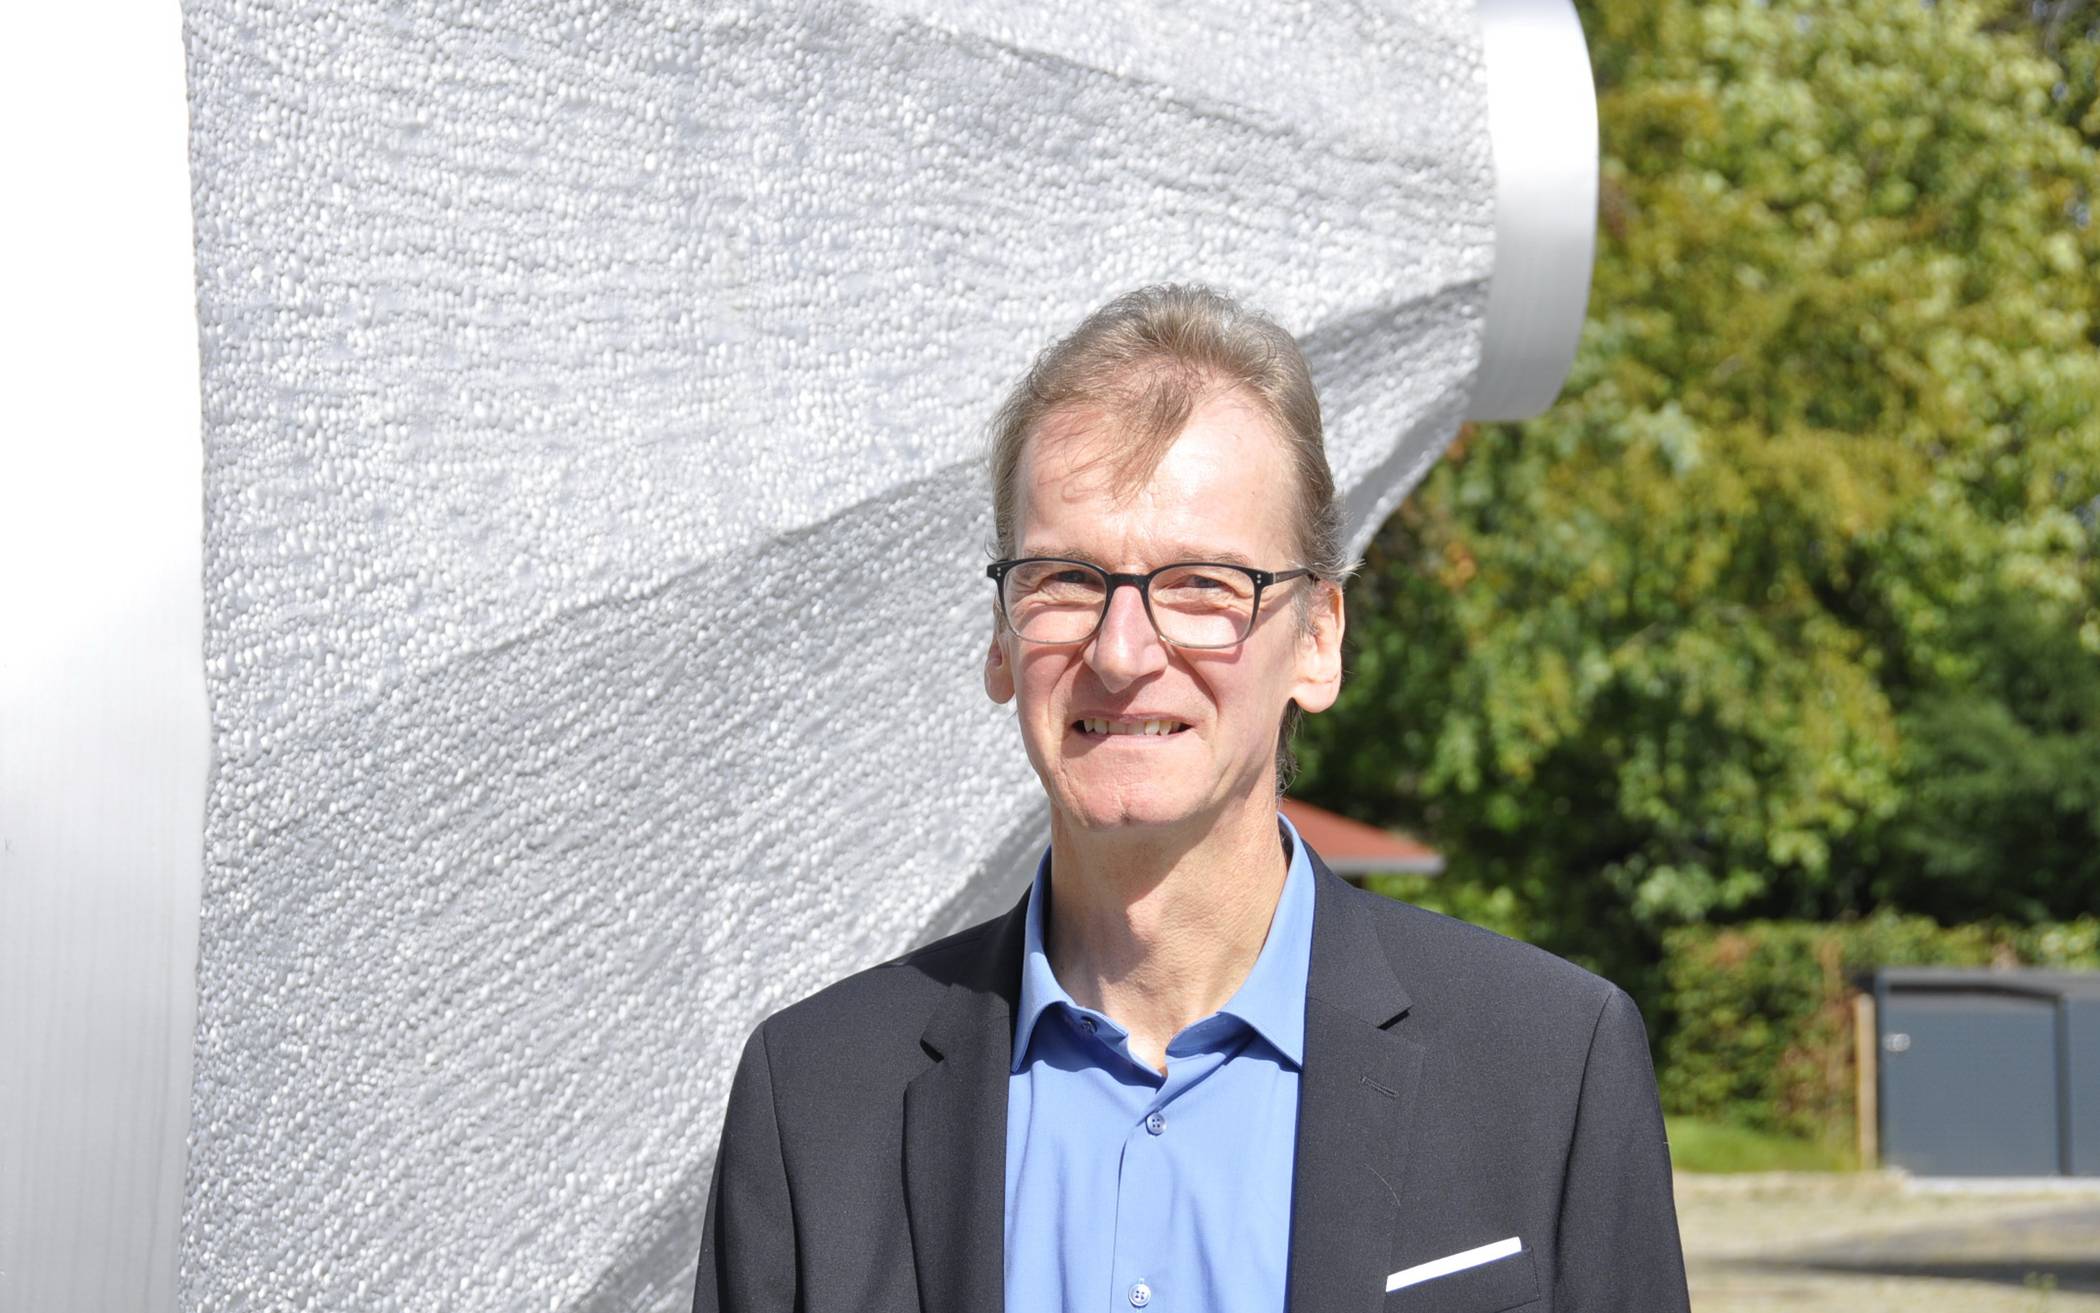  Prof. Dr.-Ing. Dietmar Tutsch leitet den Lehrstuhl für Automatisierungstechnik / Informatik in der Fakultät für Elektrotechnik, Informationstechnik und Medientechnik an der Bergischen Universität. 